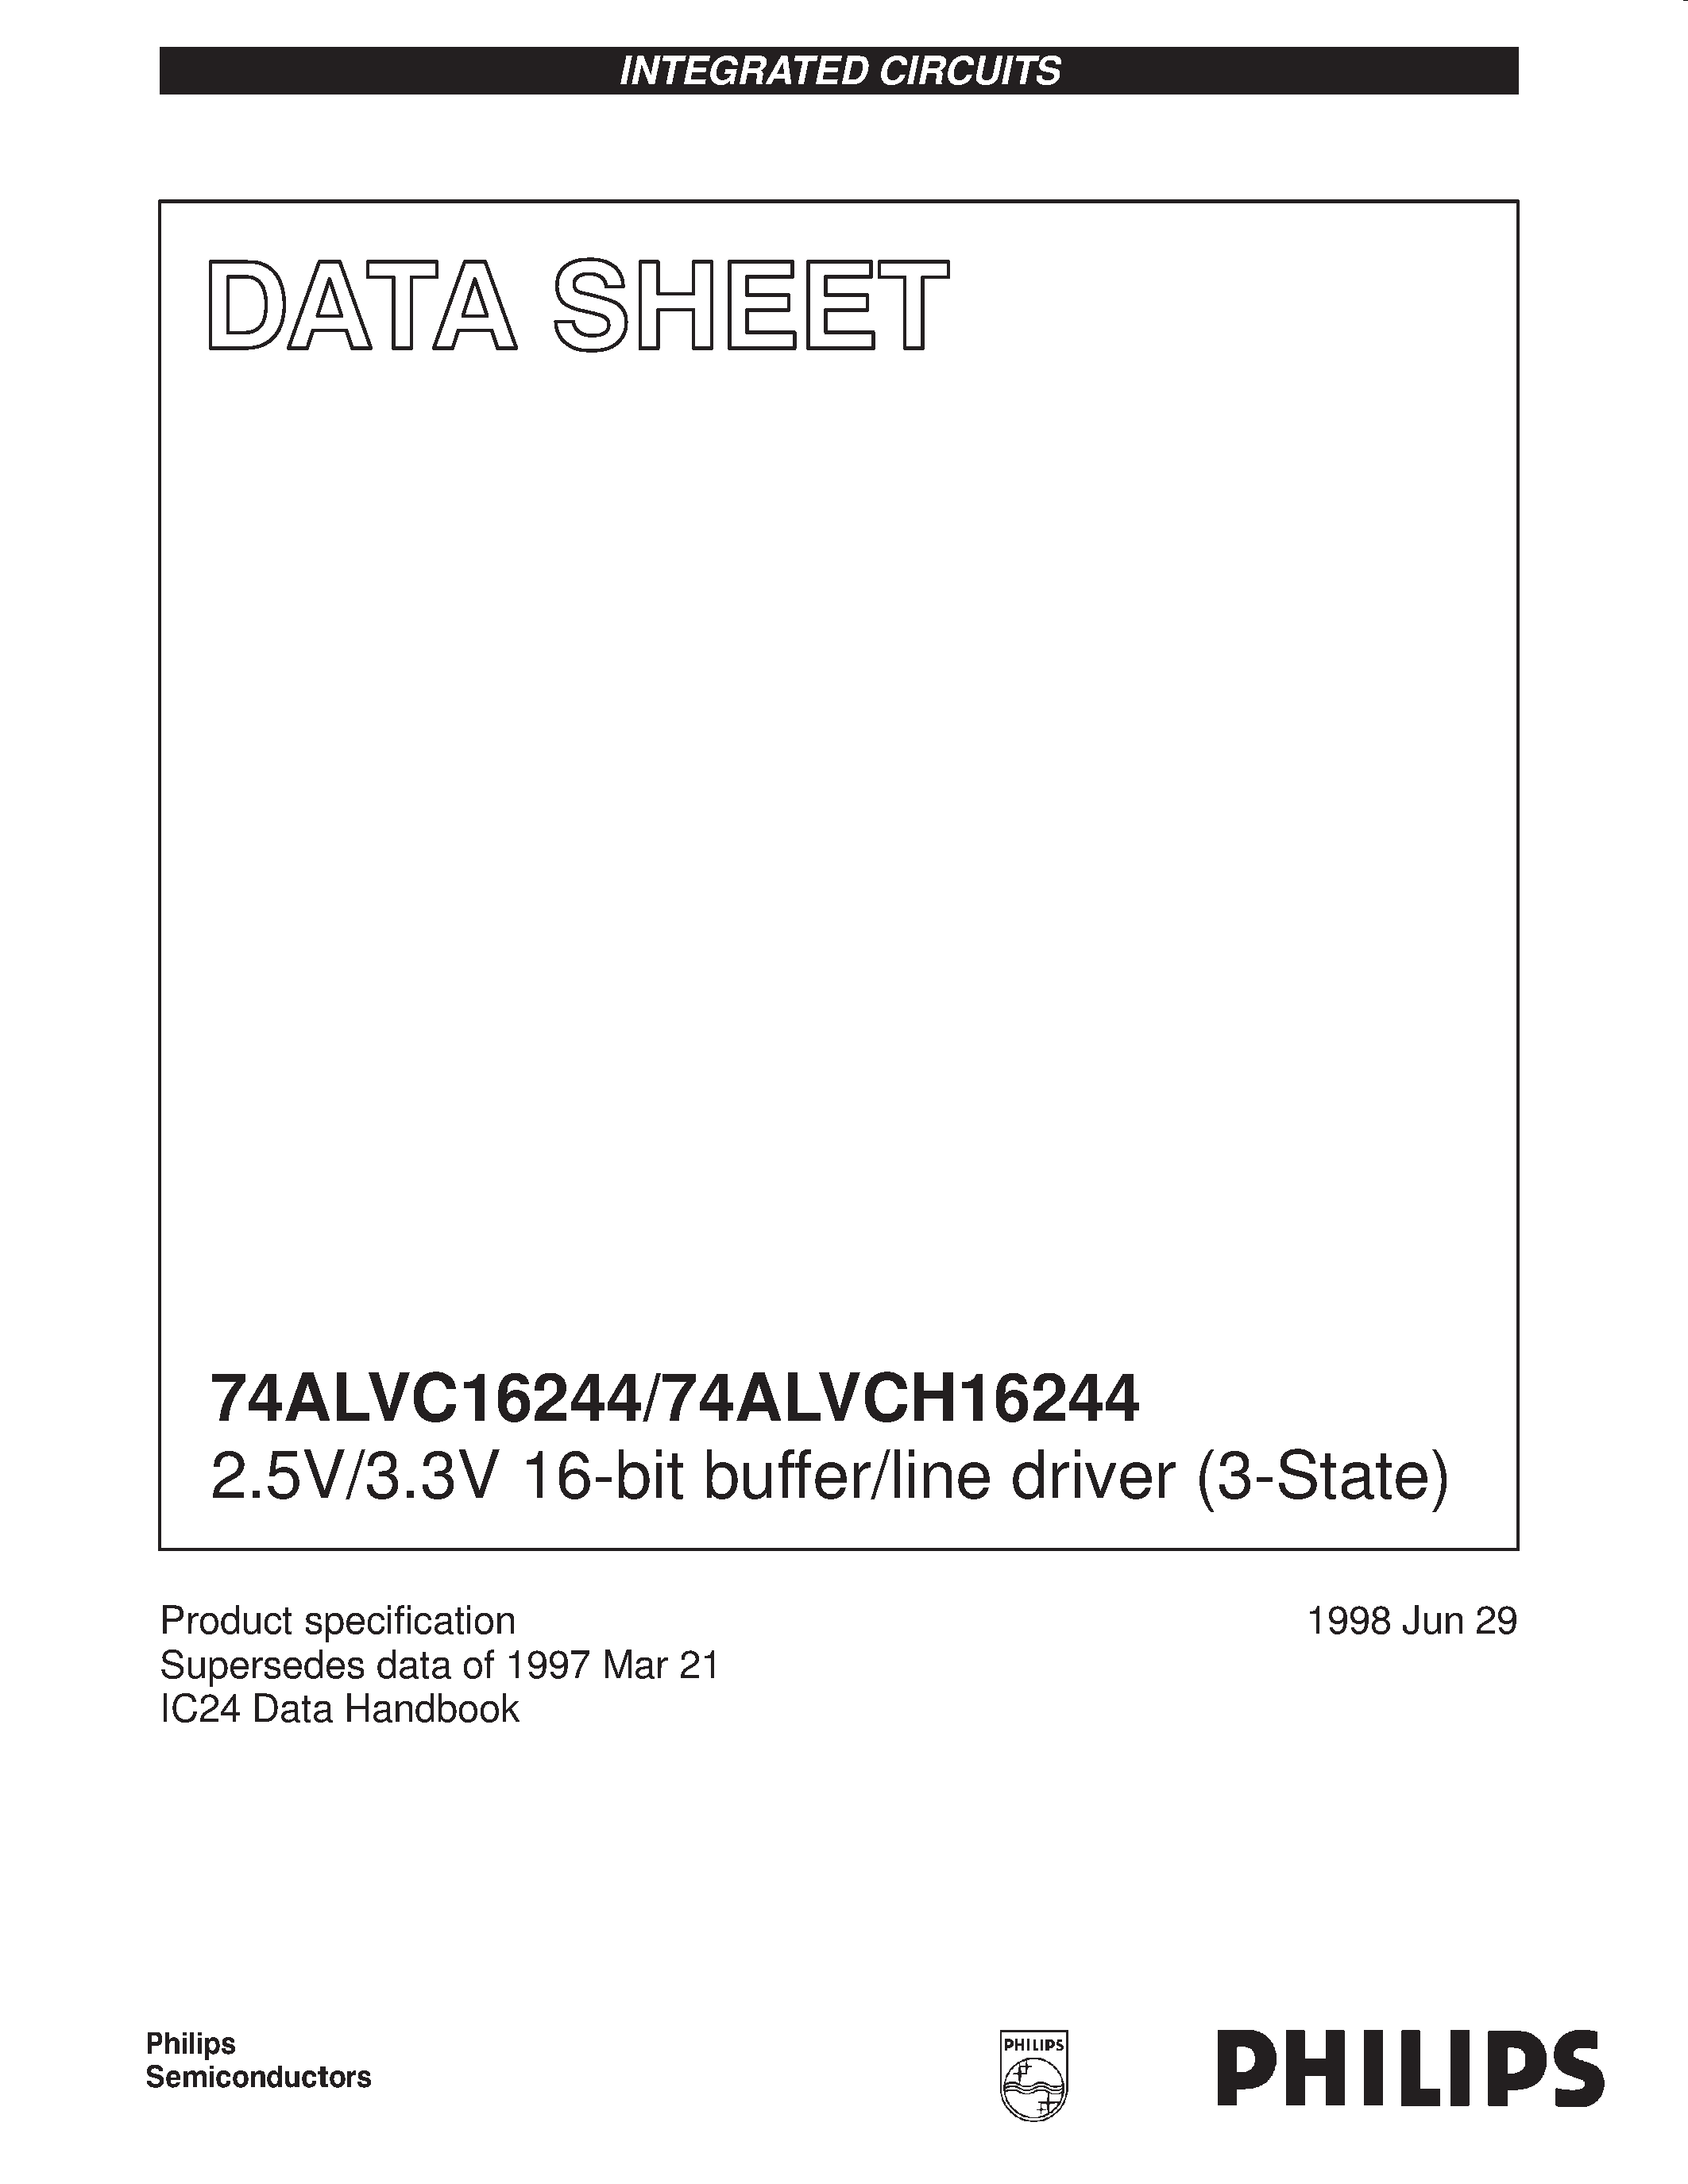 Даташит 74ALVCH16244 - 2.5V/3.3V 16-bit buffer/line driver 3-State страница 1